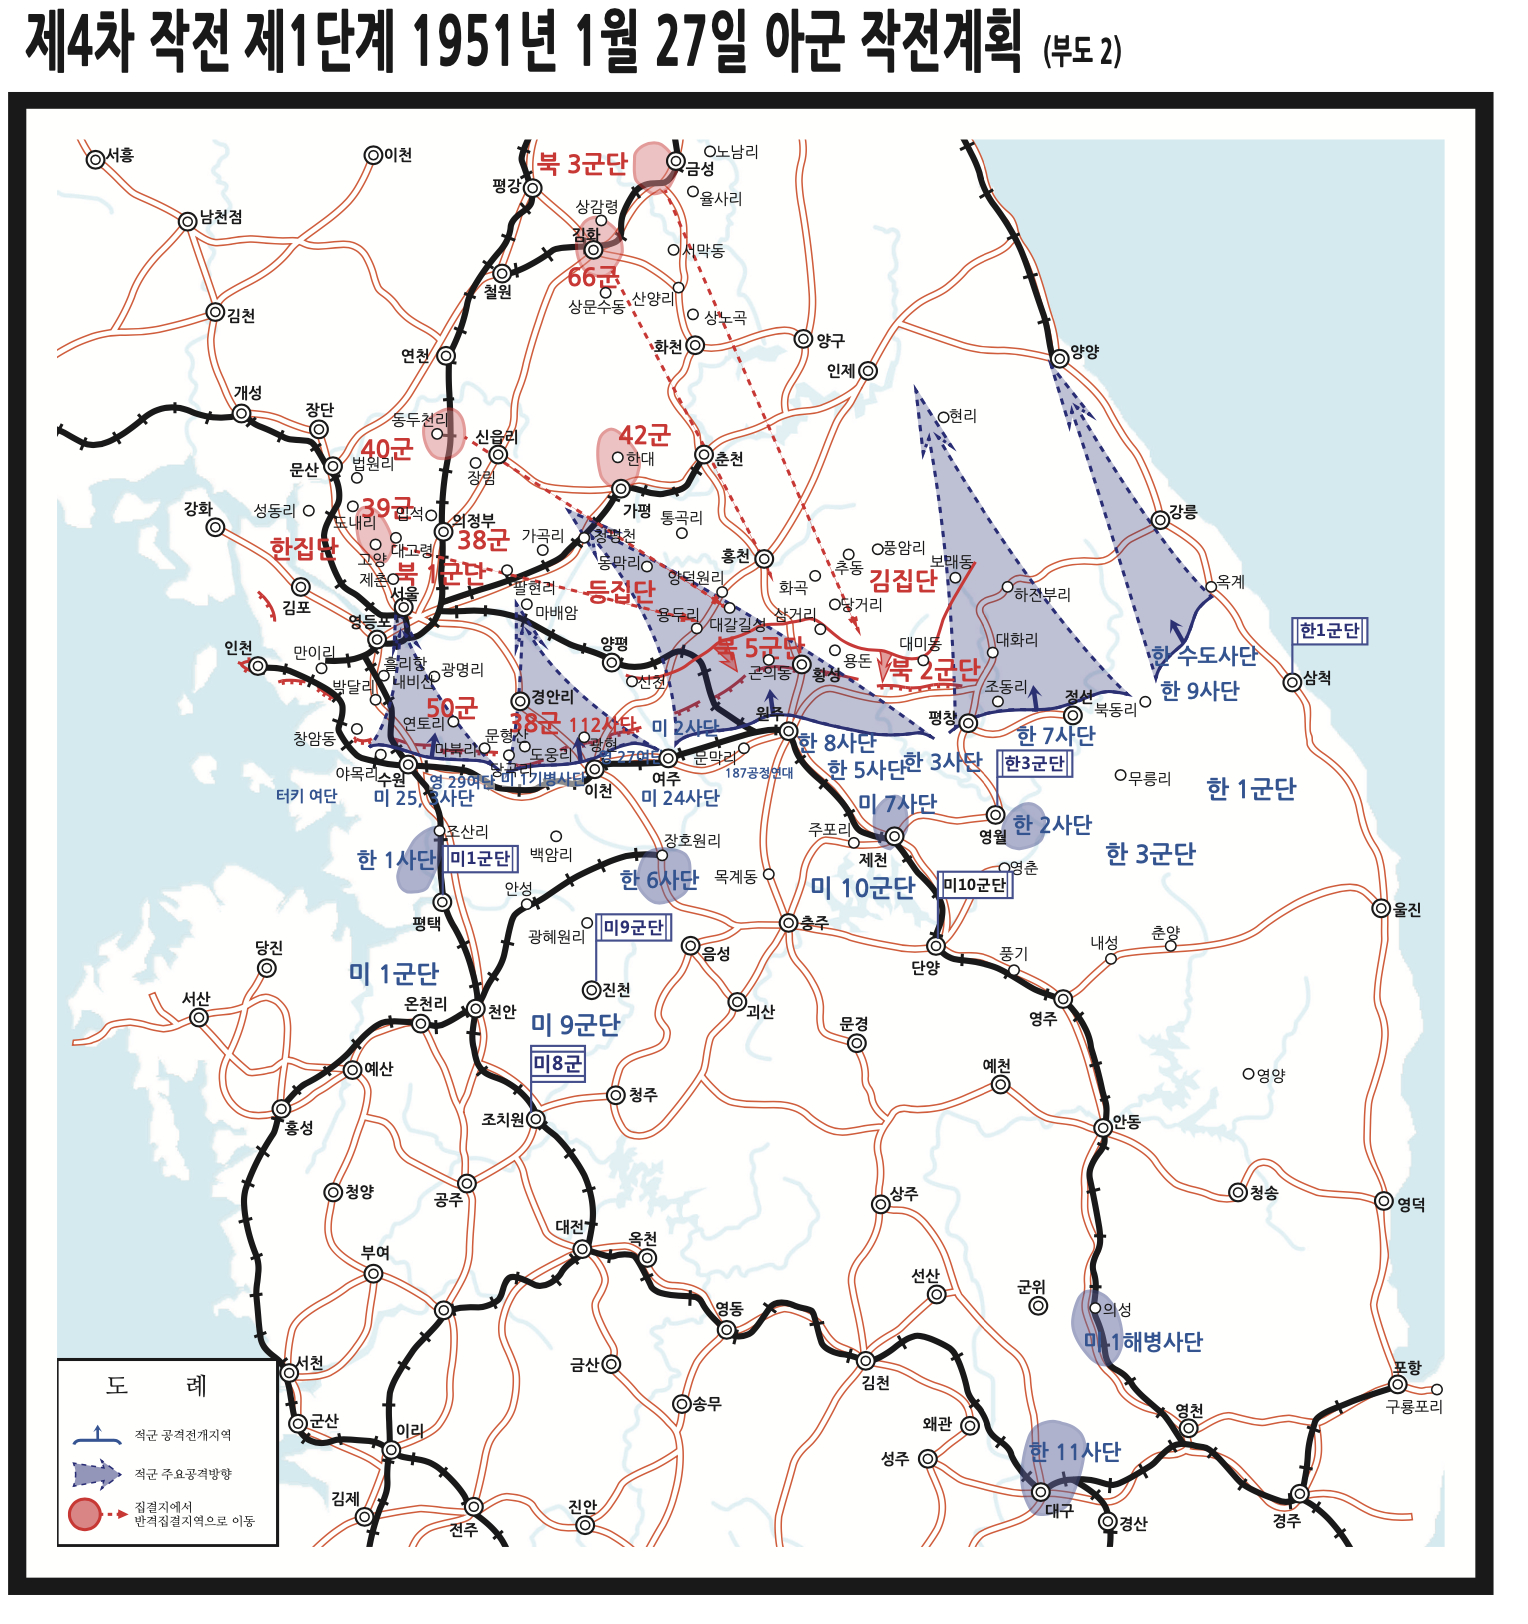 항미원조전사 16-12 제4차전역, 동부전선, 팽덕회 횡성지역 공격 결정하다.